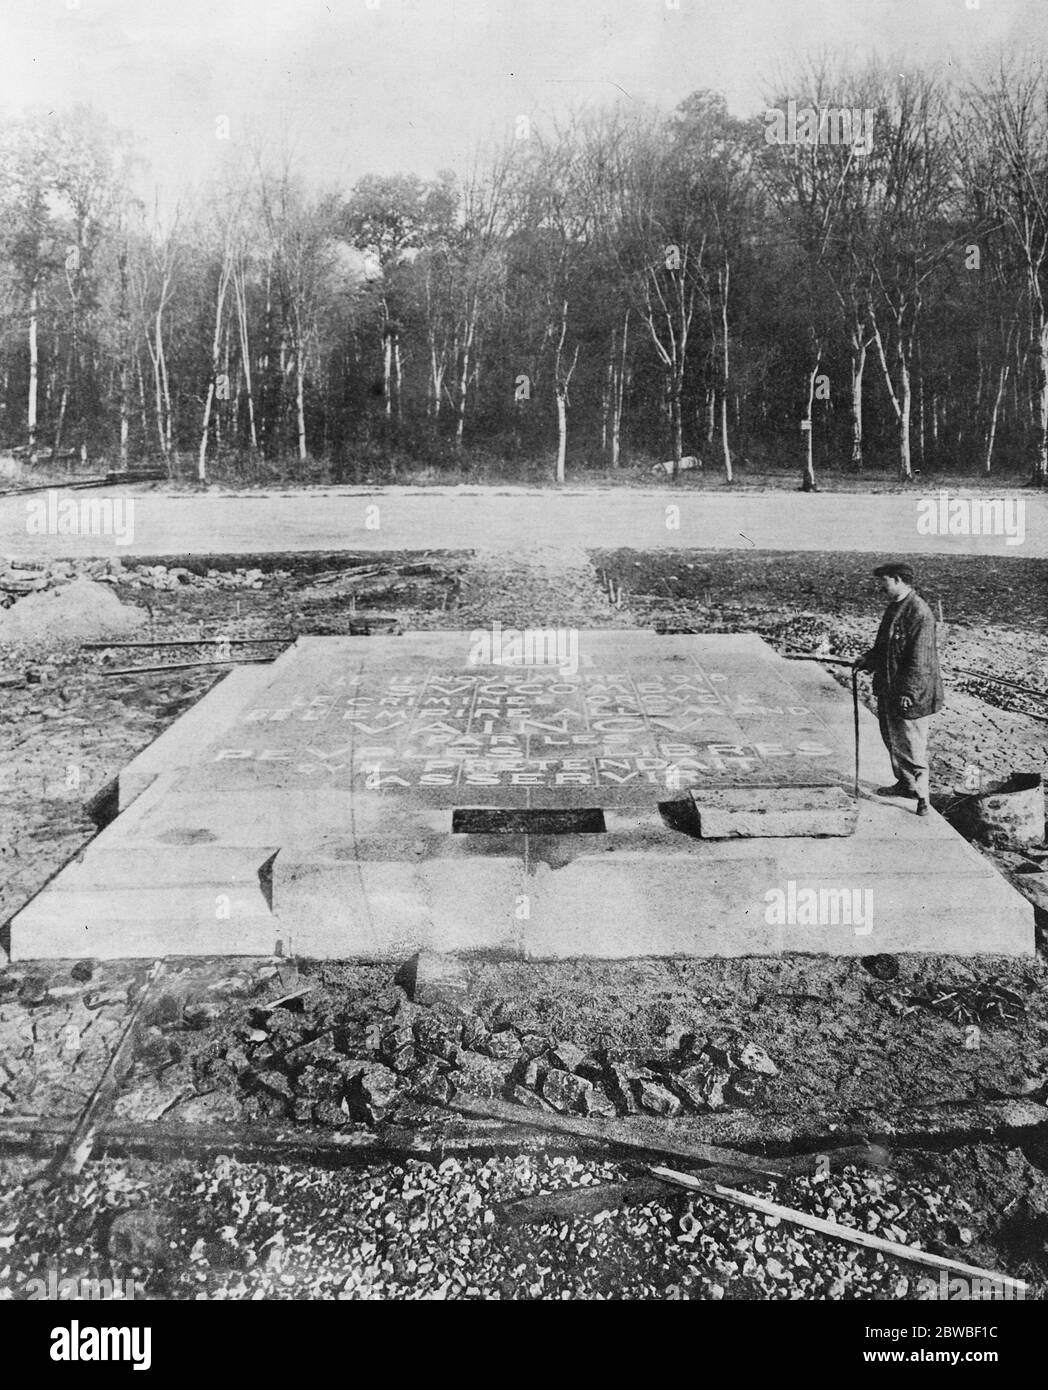 Où l'armistice a été signé l'immense dalle de granit qui a été dévoilée à Rethondes dans la Forêt de Compiègne dans la région de Picardie, France pour marquer l'endroit où l'armistice a été signé le 13 novembre 1922 Banque D'Images